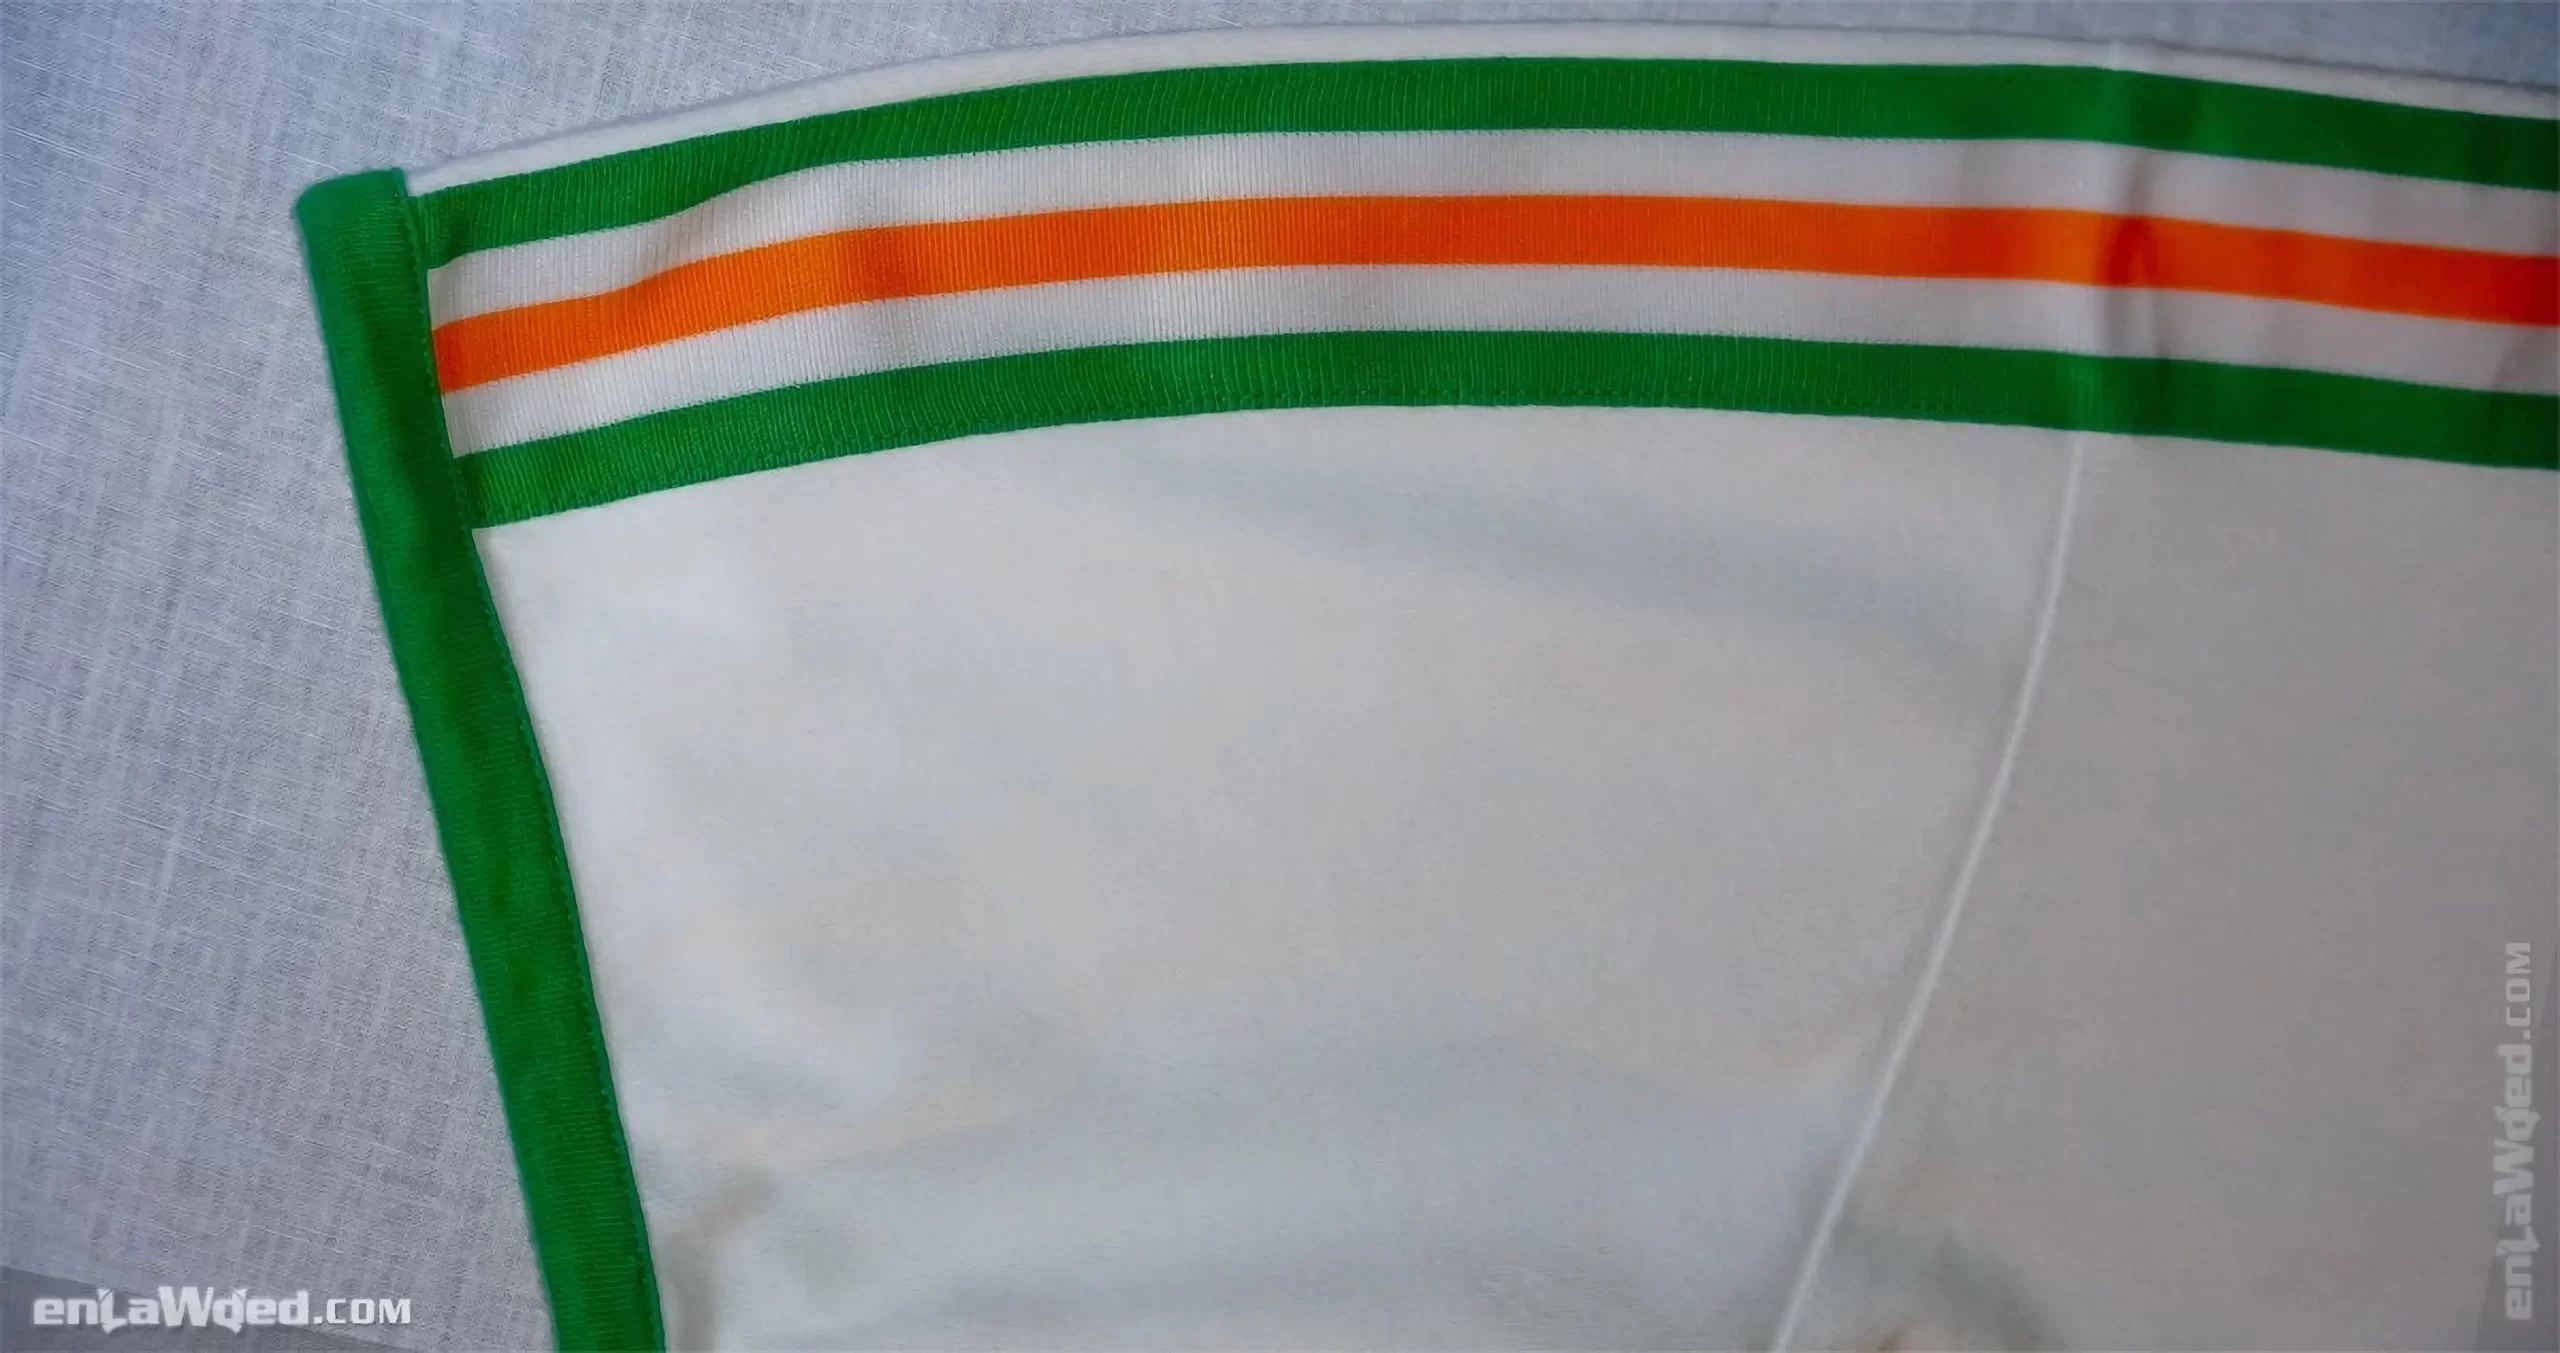 Men’s 2005 India T-Shirt by Adidas Originals: Proven (EnLawded.com file #lmcfvo4m3dqoeepf79u)